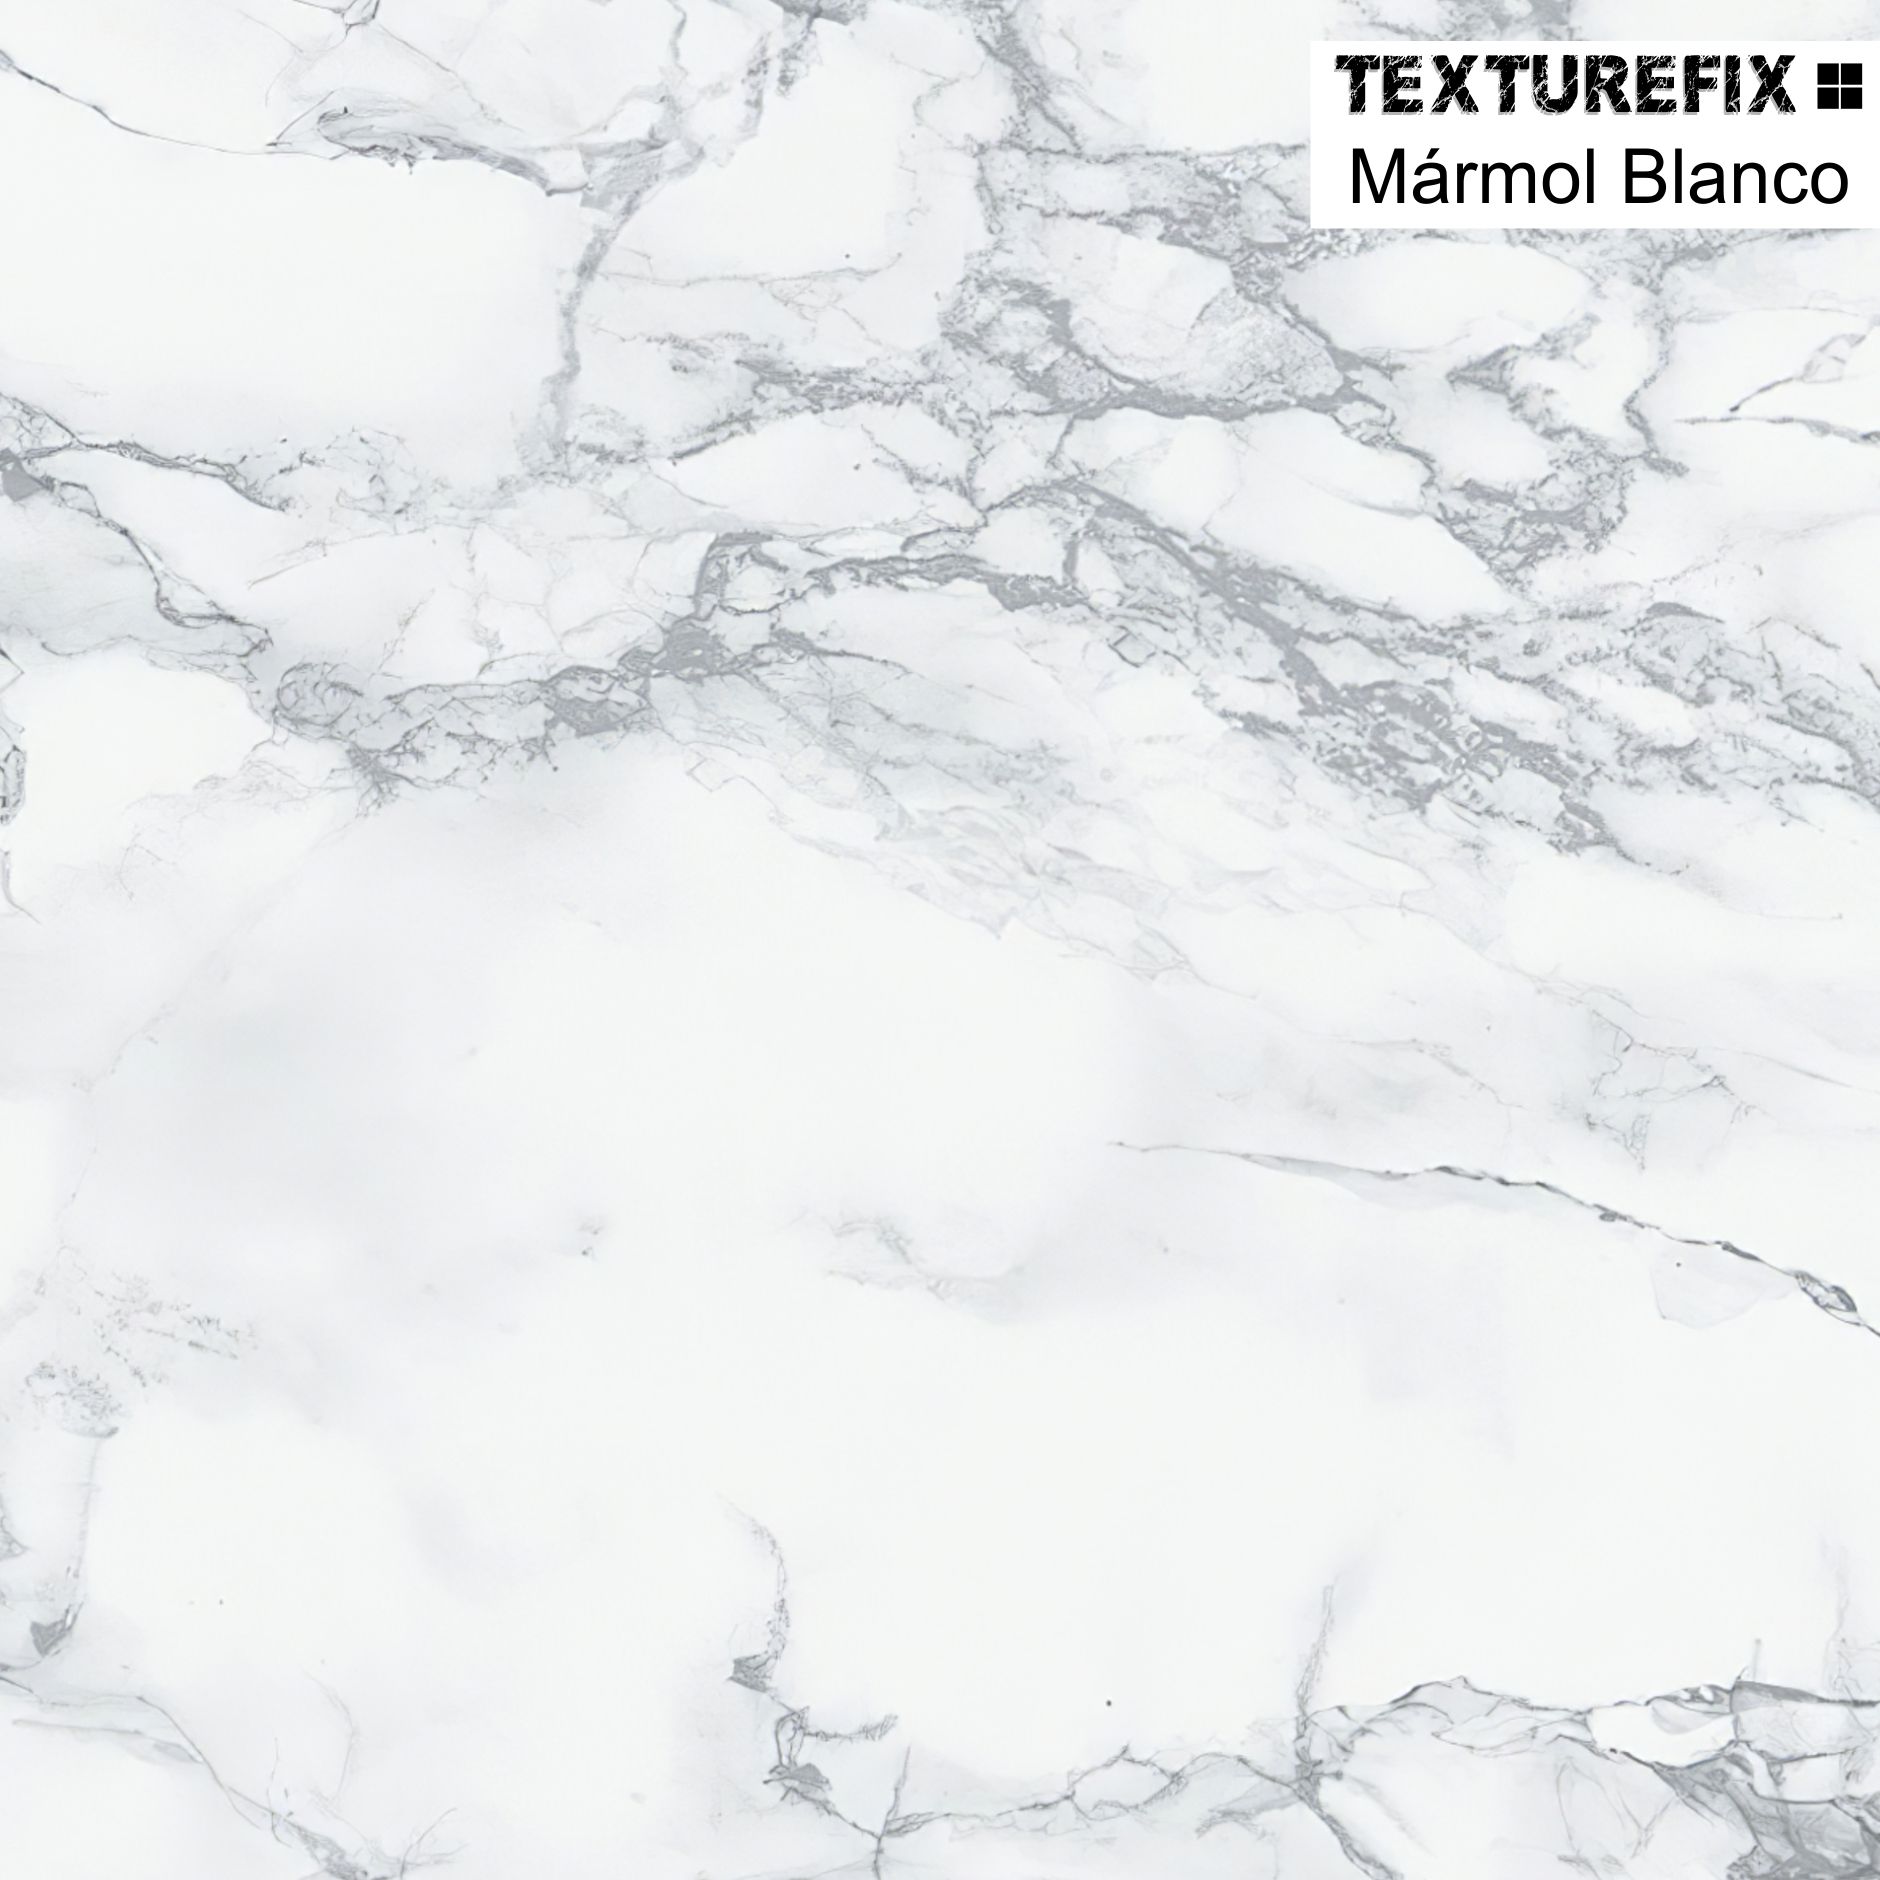 texturefix mármol